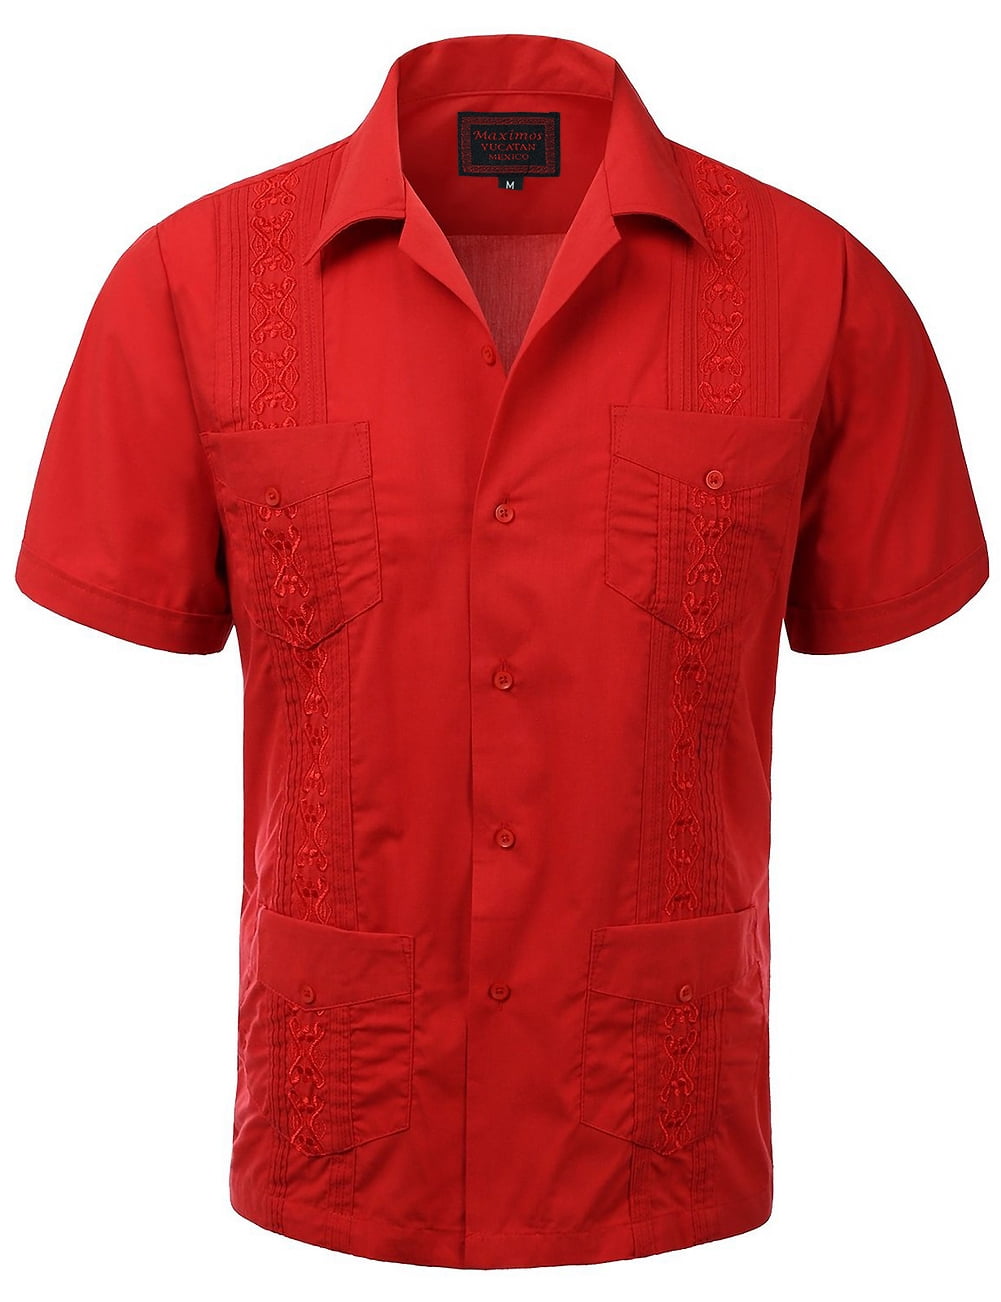 Guayabera Men's Cuban Beach Wedding Short Sleeve Casual Dress Shirt Red ...